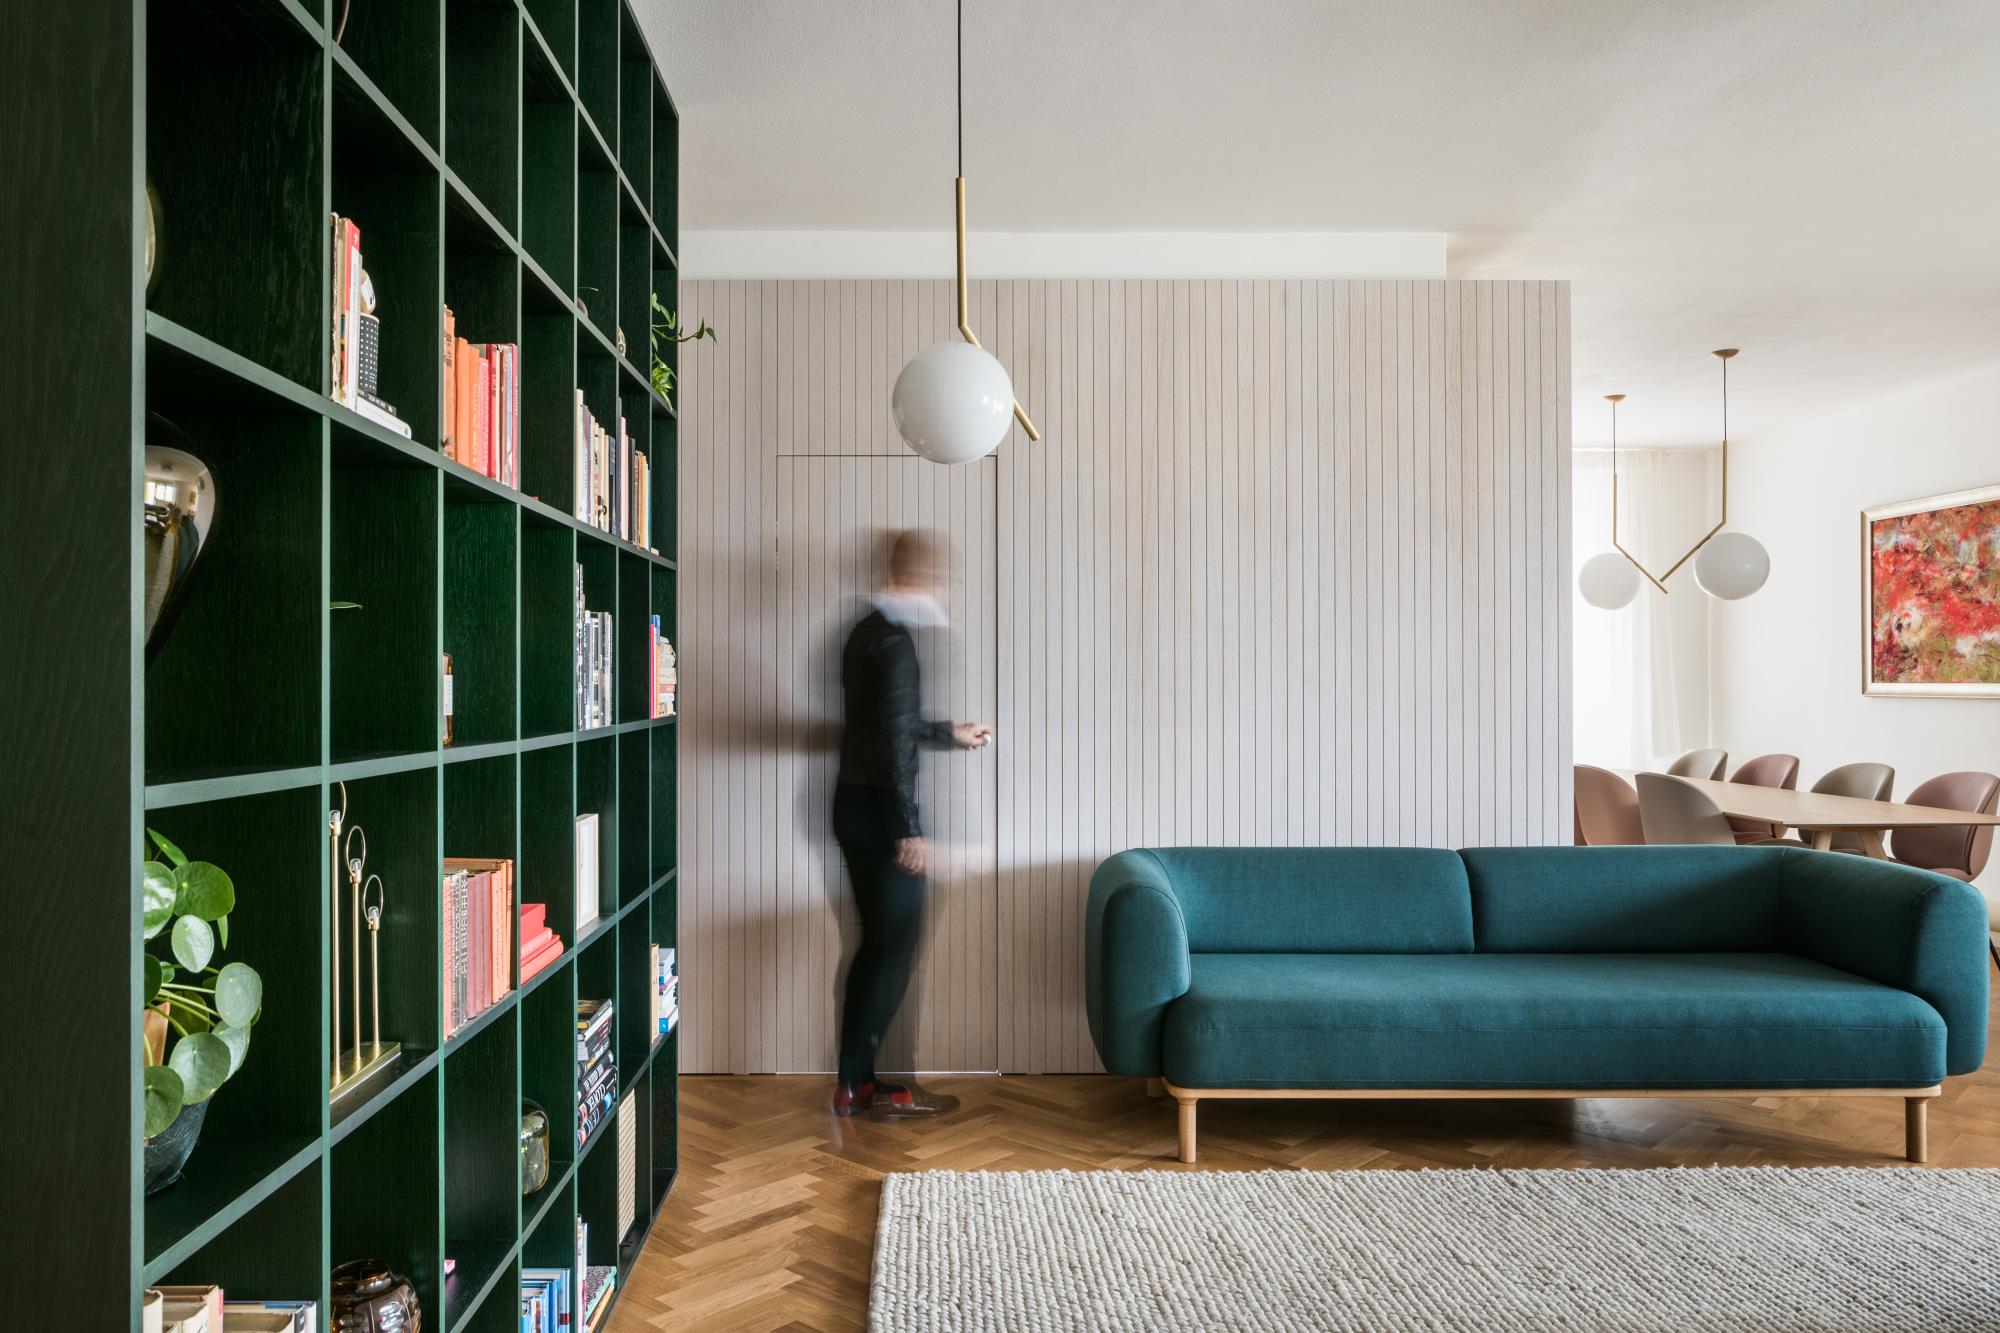 obývacia miestnosť so zelenou sedacou súpravou v zrekonštruovanom byte od architekta Alana Prokopa